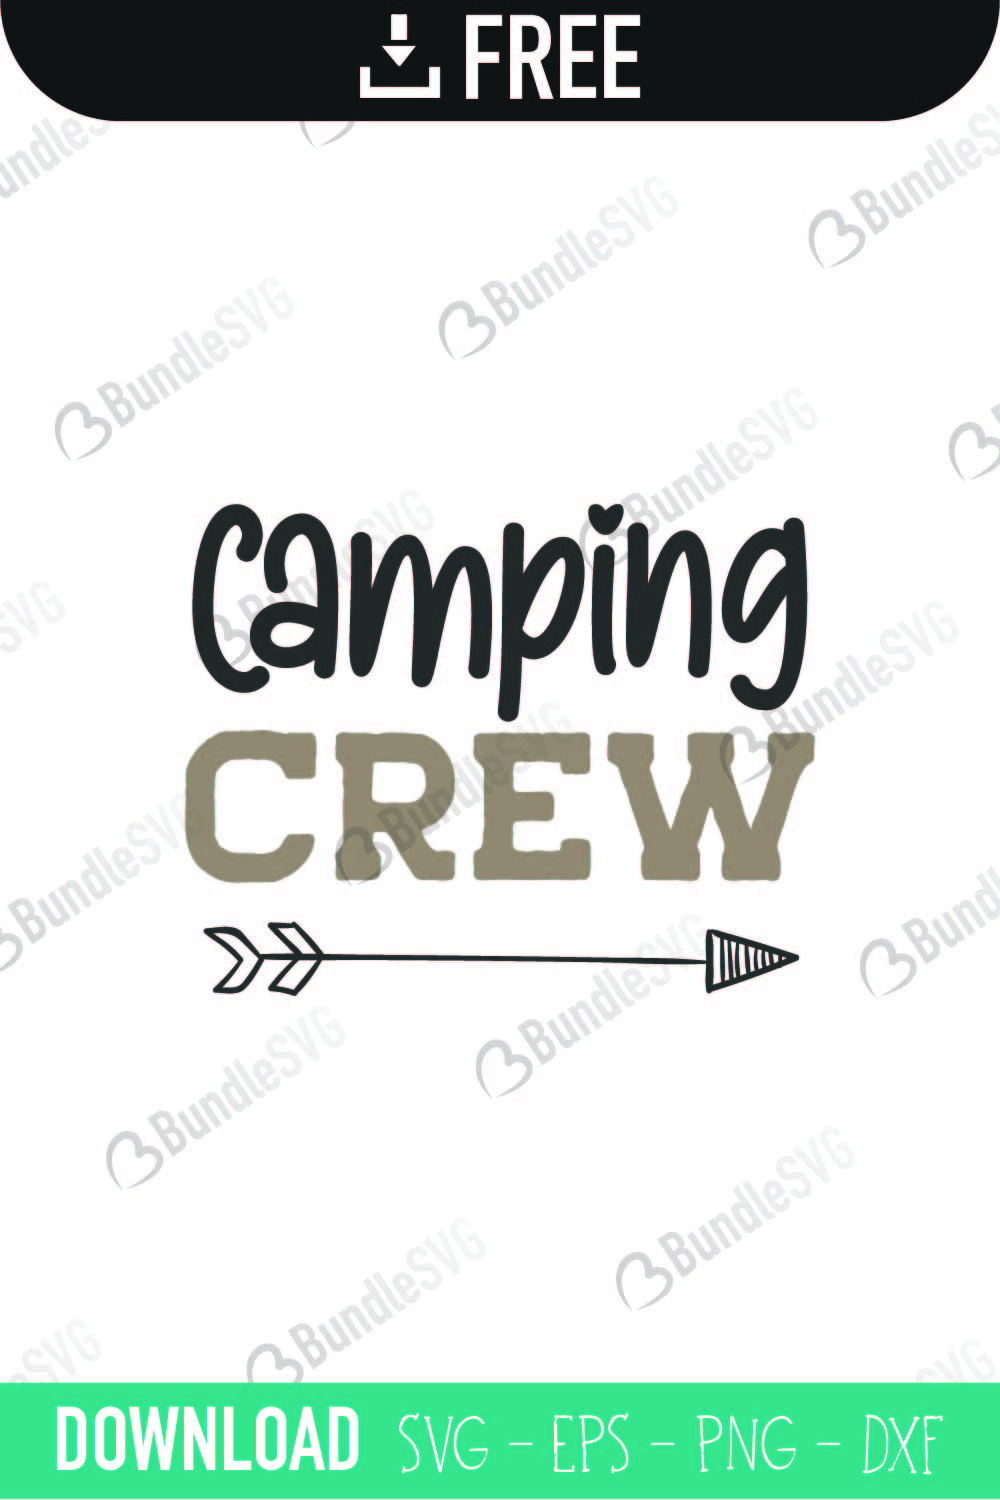 Camping Crew SVG Cut Files Free Download | BundleSVG